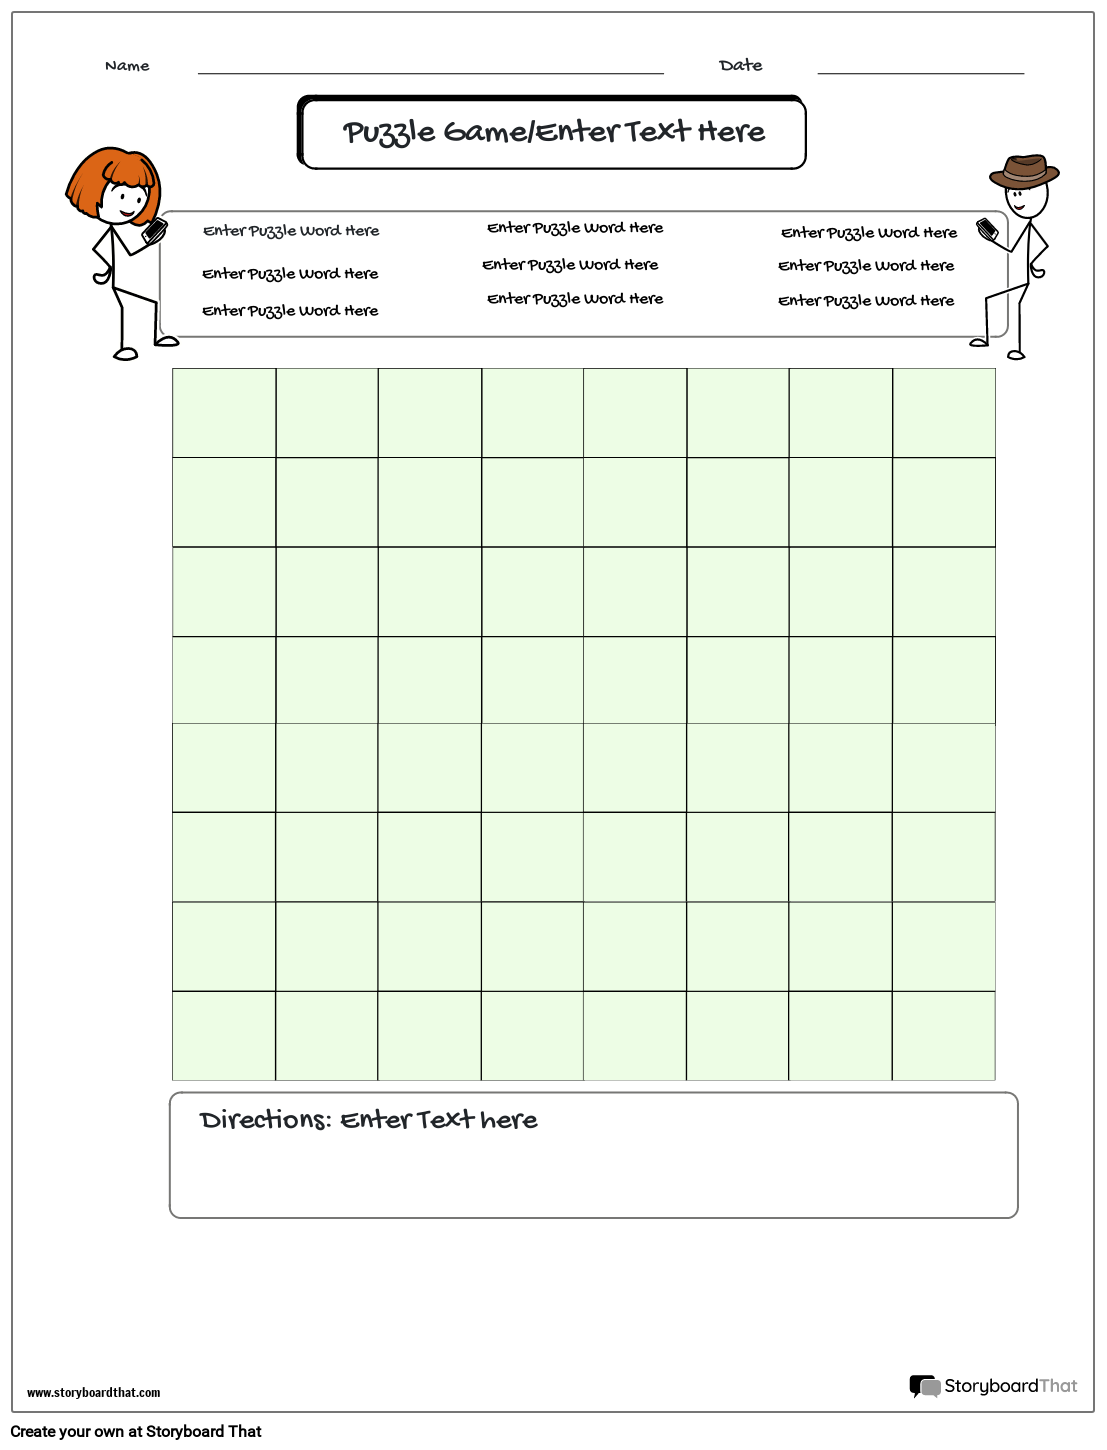 Stick People Based Crossword Grid Game Worksheet